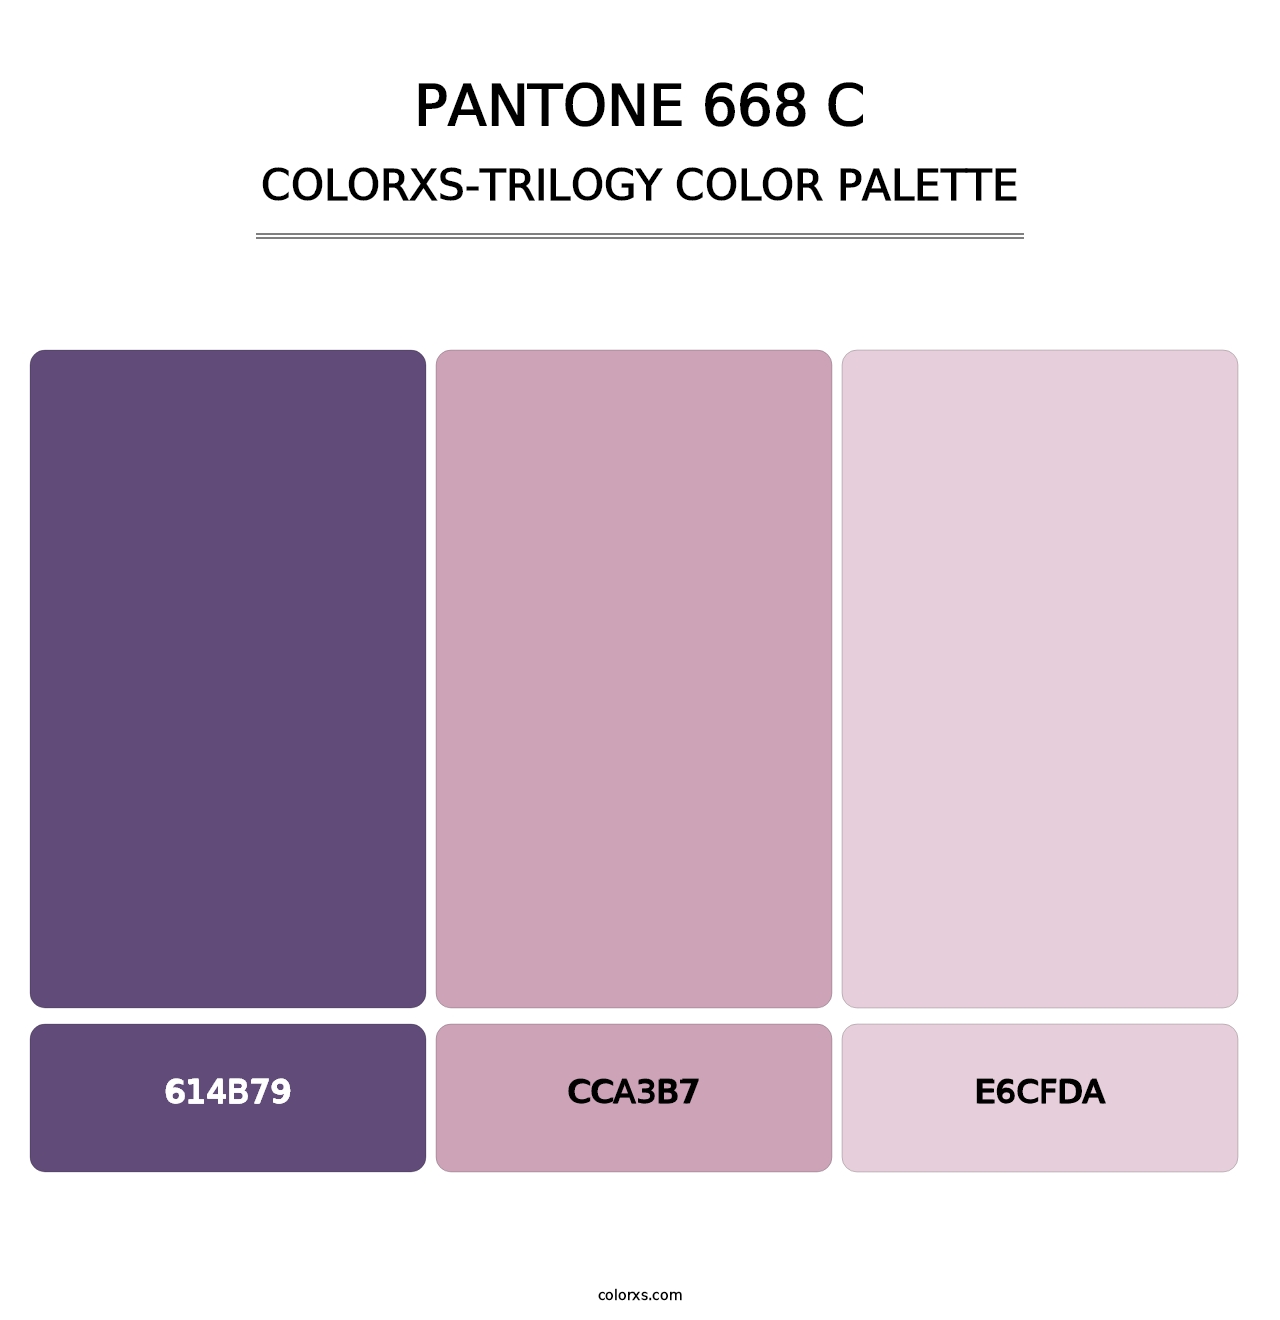 PANTONE 668 C - Colorxs Trilogy Palette